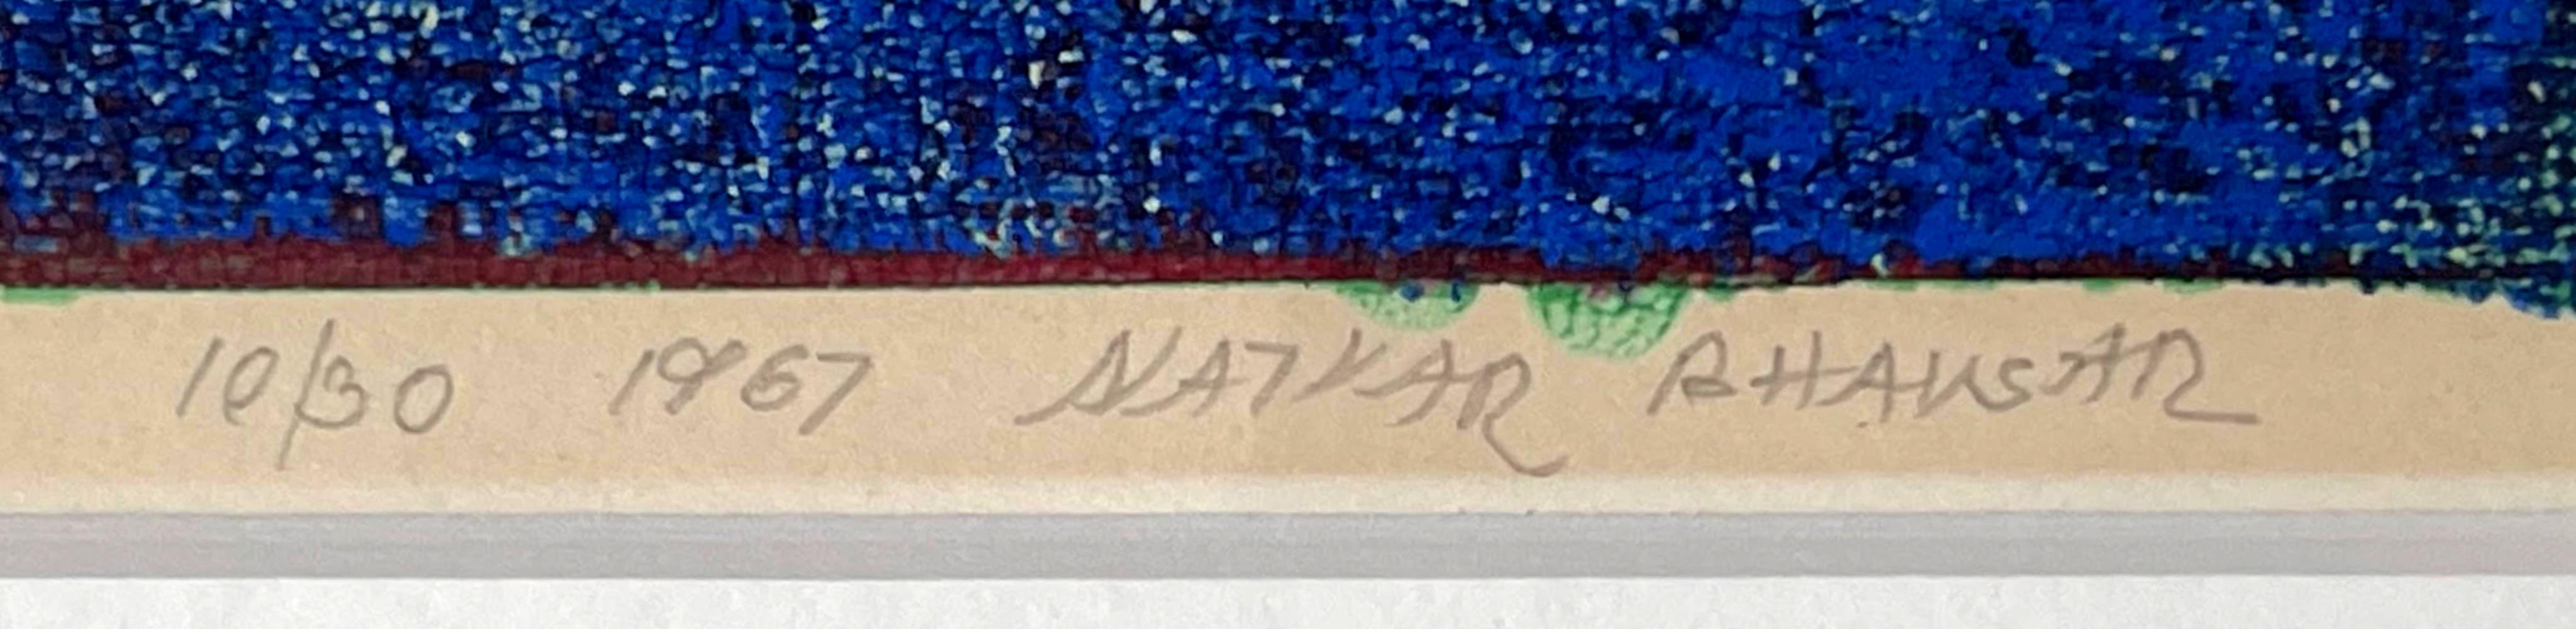 Natvar Bhavsar
Ohne Titel, Mitte der 1960er Jahre, Abstraktion, 1967
Siebdruck
Mit Bleistift signiert, datiert und nummeriert 10/30 von Natvar Bhavsar auf der Vorderseite
Inklusive Rahmen: Elegant gerahmt in einem modernen Holzrahmen in